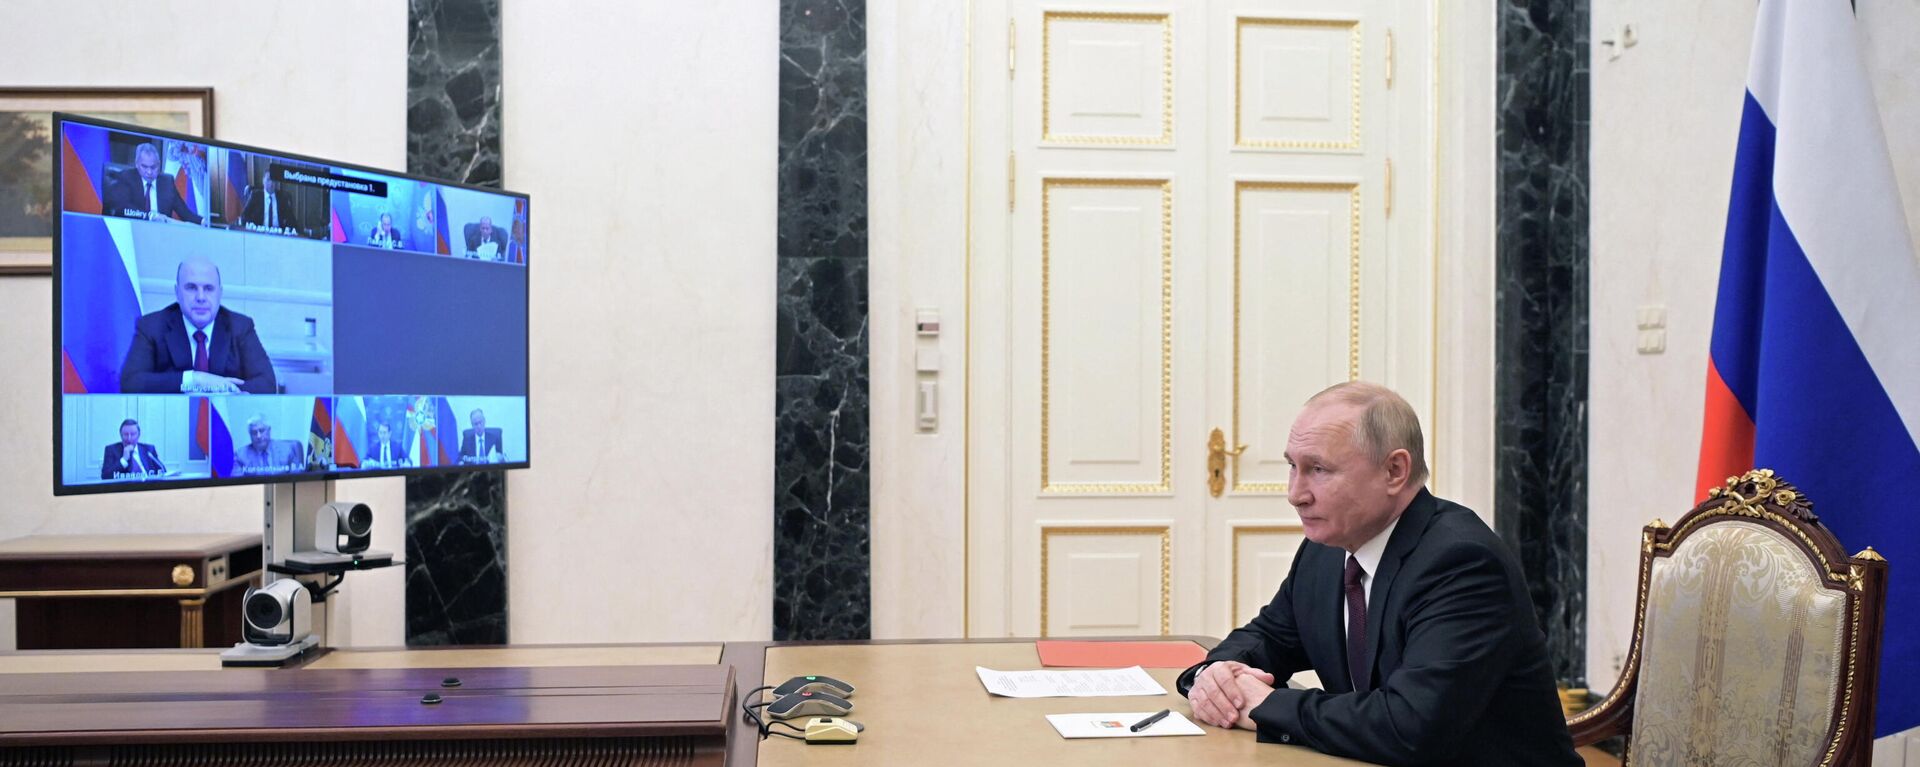 O presidente russo, Vladimir Putin, preside reunião com membros do Conselho de Segurança por meio de um link de vídeo em Moscou, Rússia, em 25 de fevereiro de 2022 - Sputnik Brasil, 1920, 25.02.2022